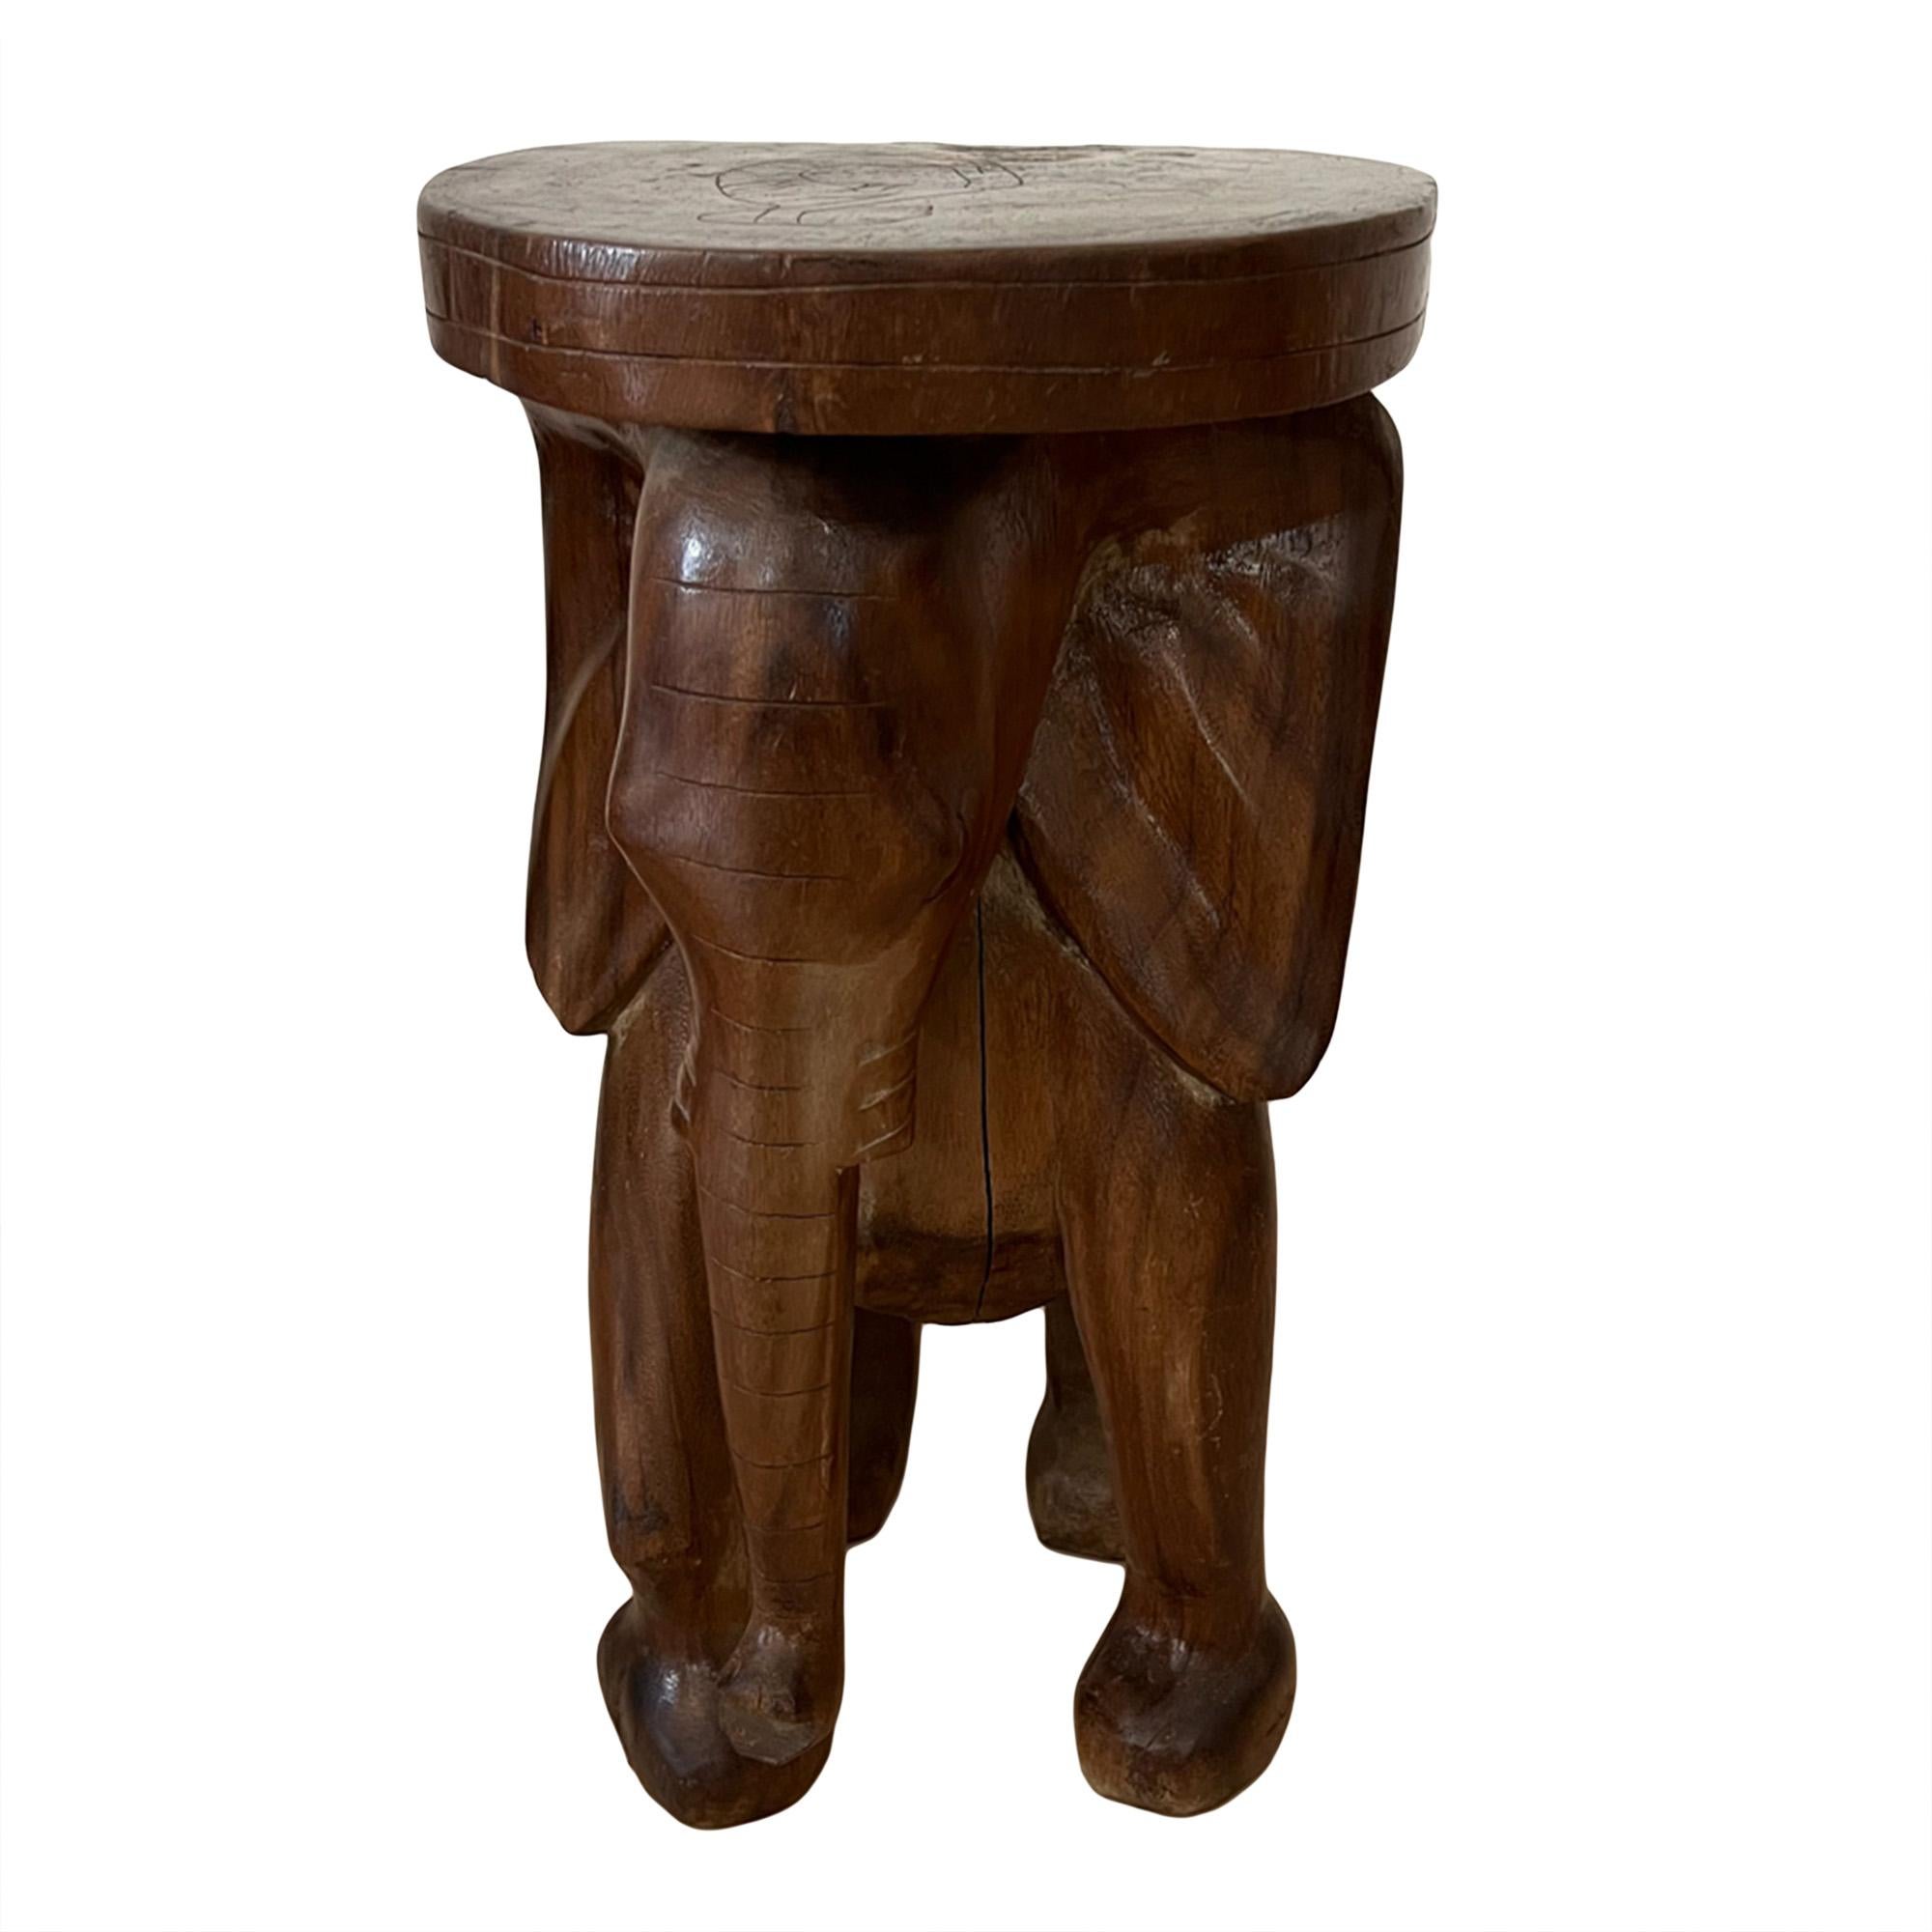 Cette table d'appoint originale a été sculptée dans du bois de padouk à Ceylan dans les années 1950. 

Veuillez regarder toutes les photos pour voir les détails du grand éléphant - décoratif et pratique !

